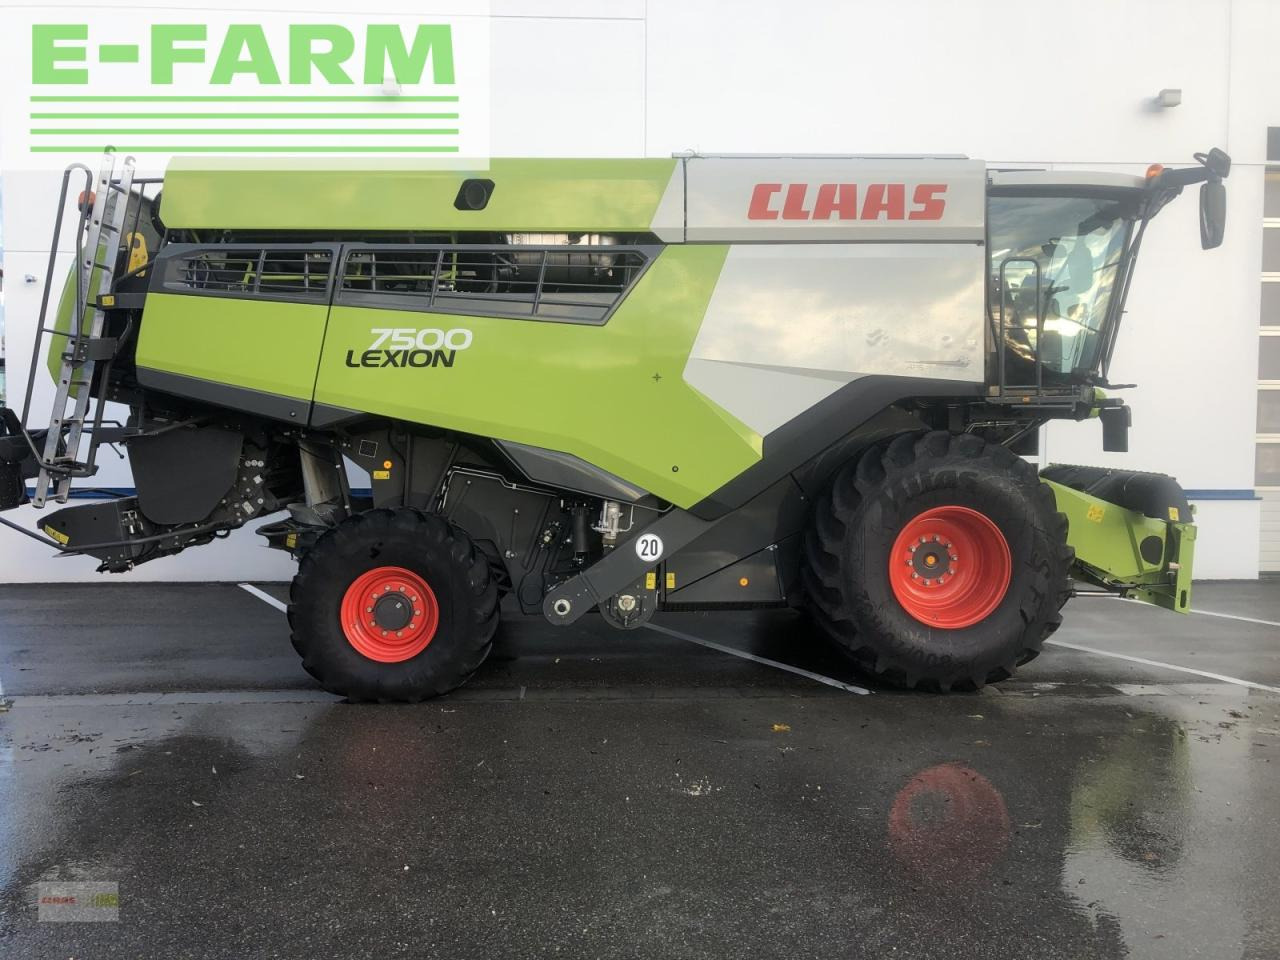 Traktor CLAAS lexion 7500